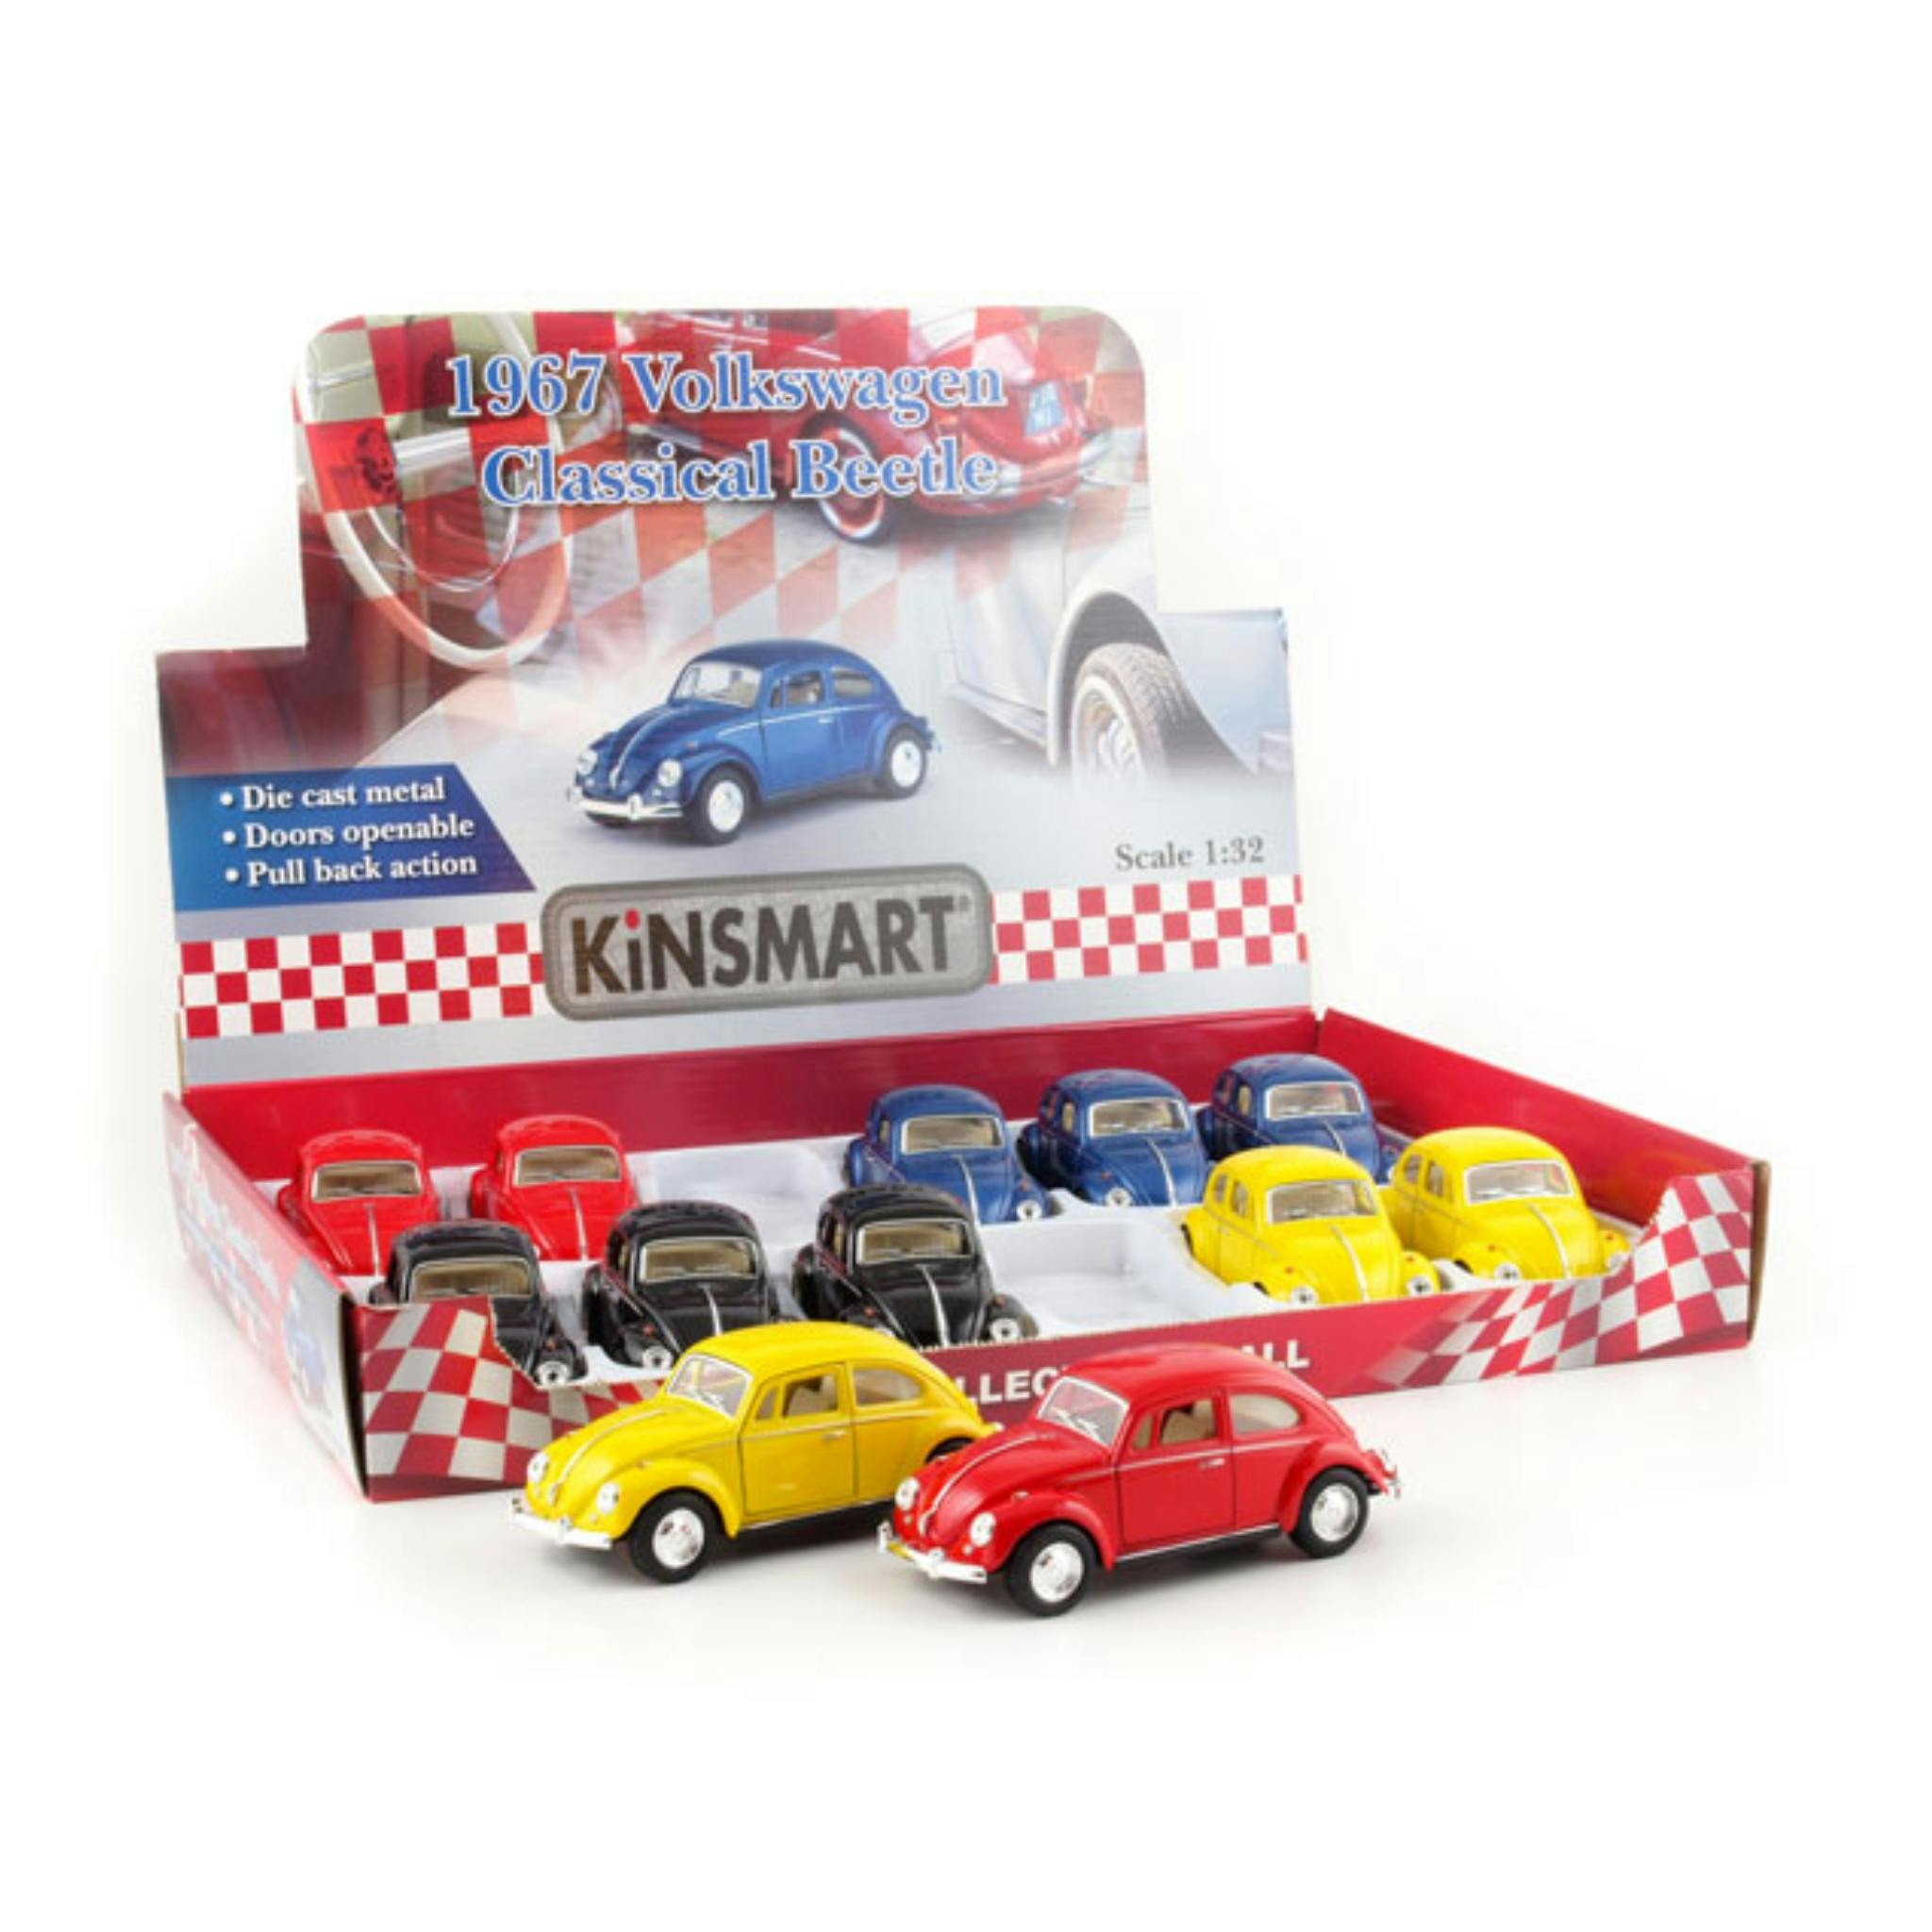 Kinsmart, kopia av Volkswagen Classical Beetle 1967 i skalan 1:32.